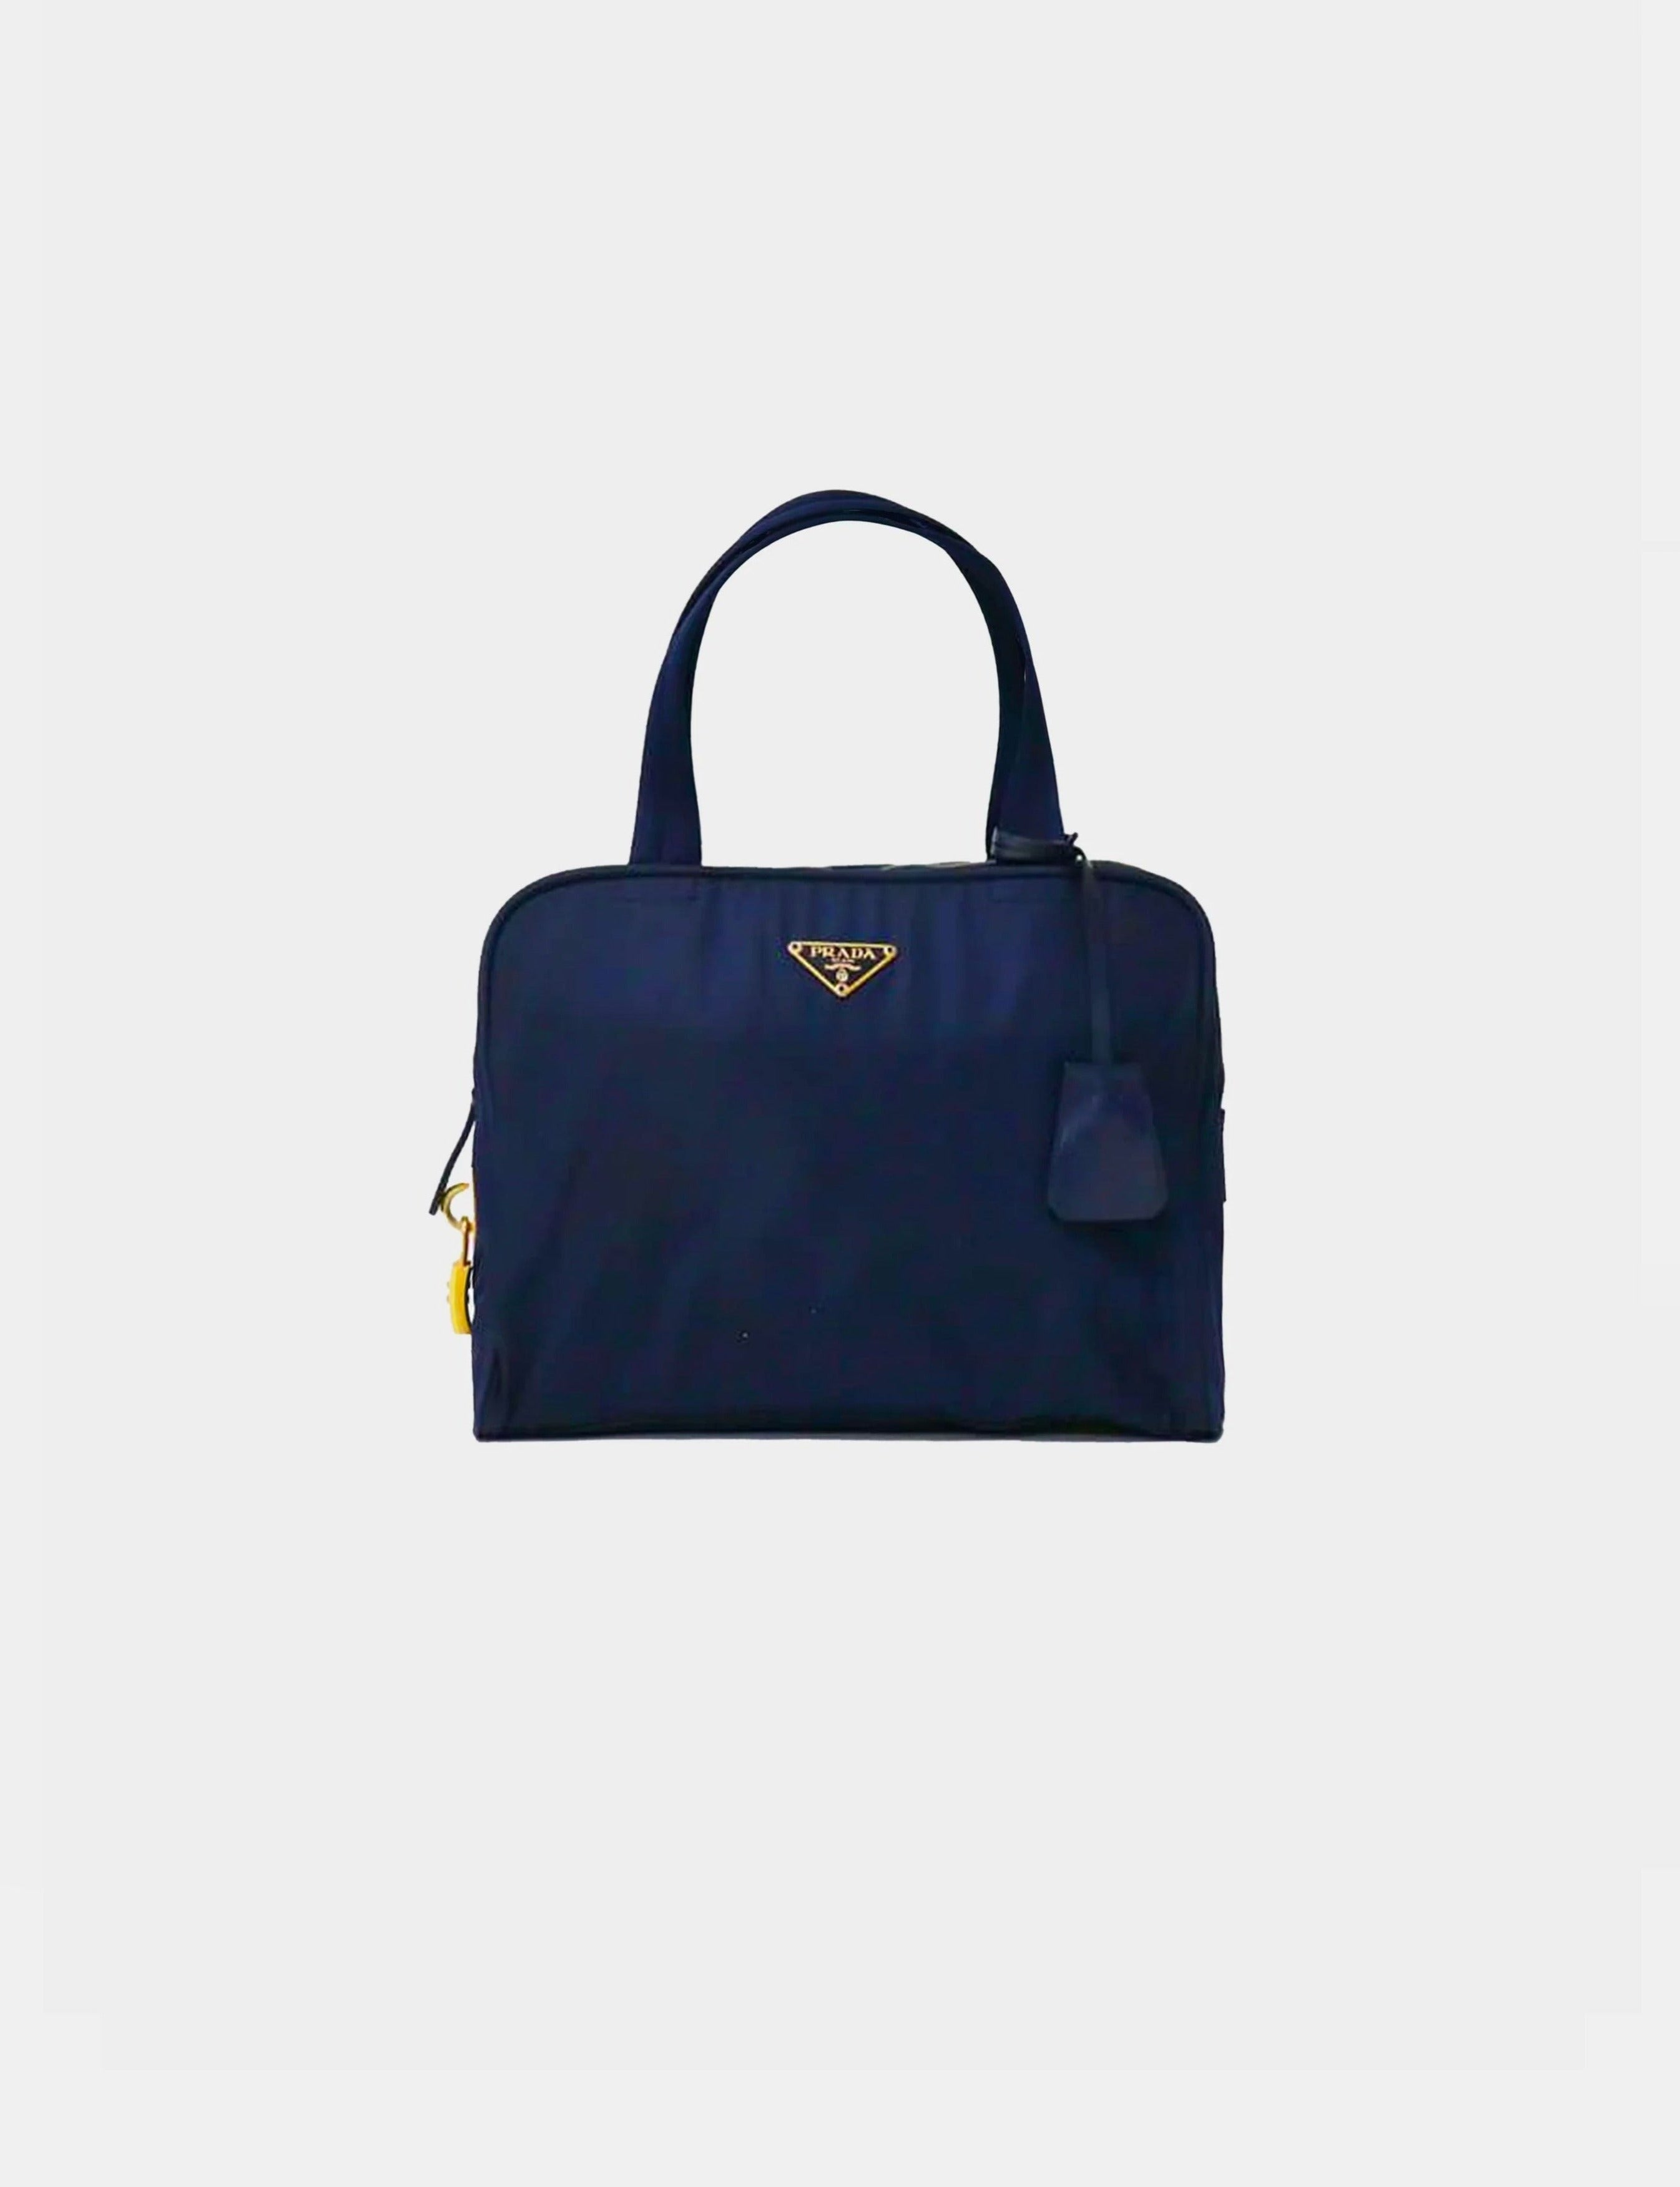 Prada 2000s Navy Blue Nylon Tote Bag